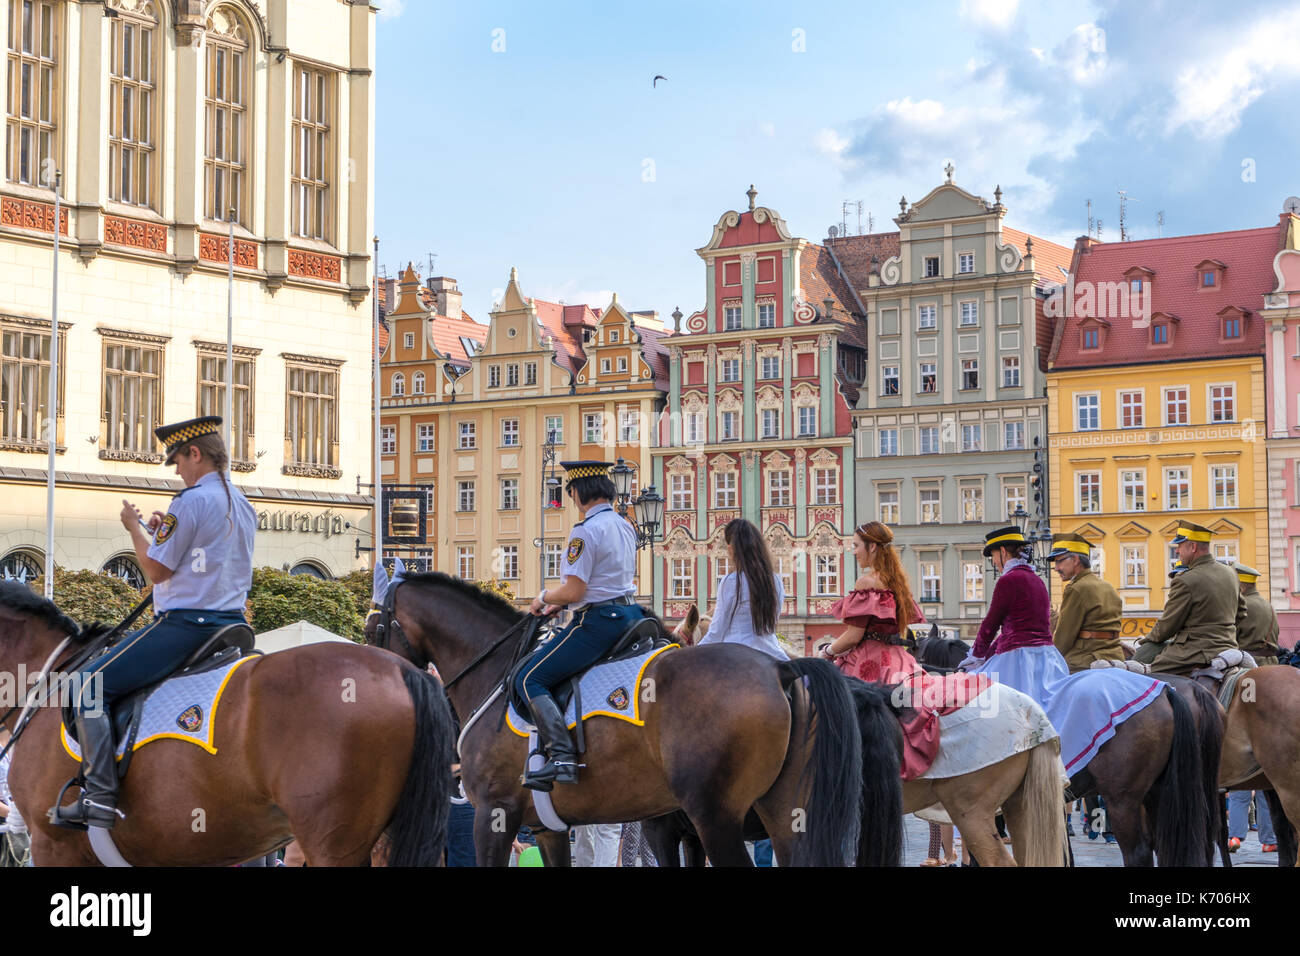 Leute auf Pferden während einer polnischen Folklore Parade im Alten Markt im Jahr 2017 in Breslau, Polen Stockfoto